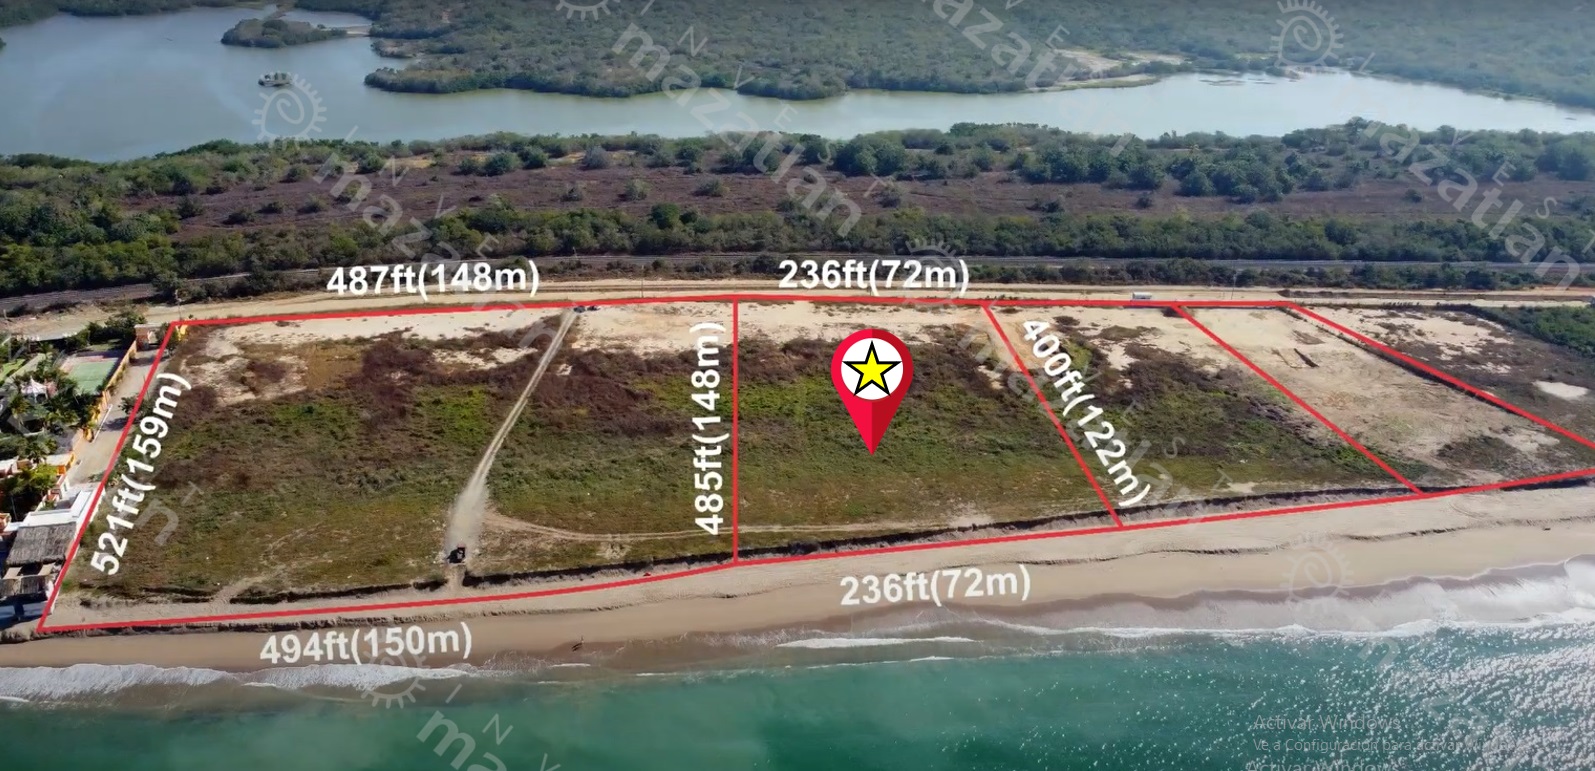 Terreno de playa en venta en La Playa el Delfín – OPORTUNIDAD $$$!